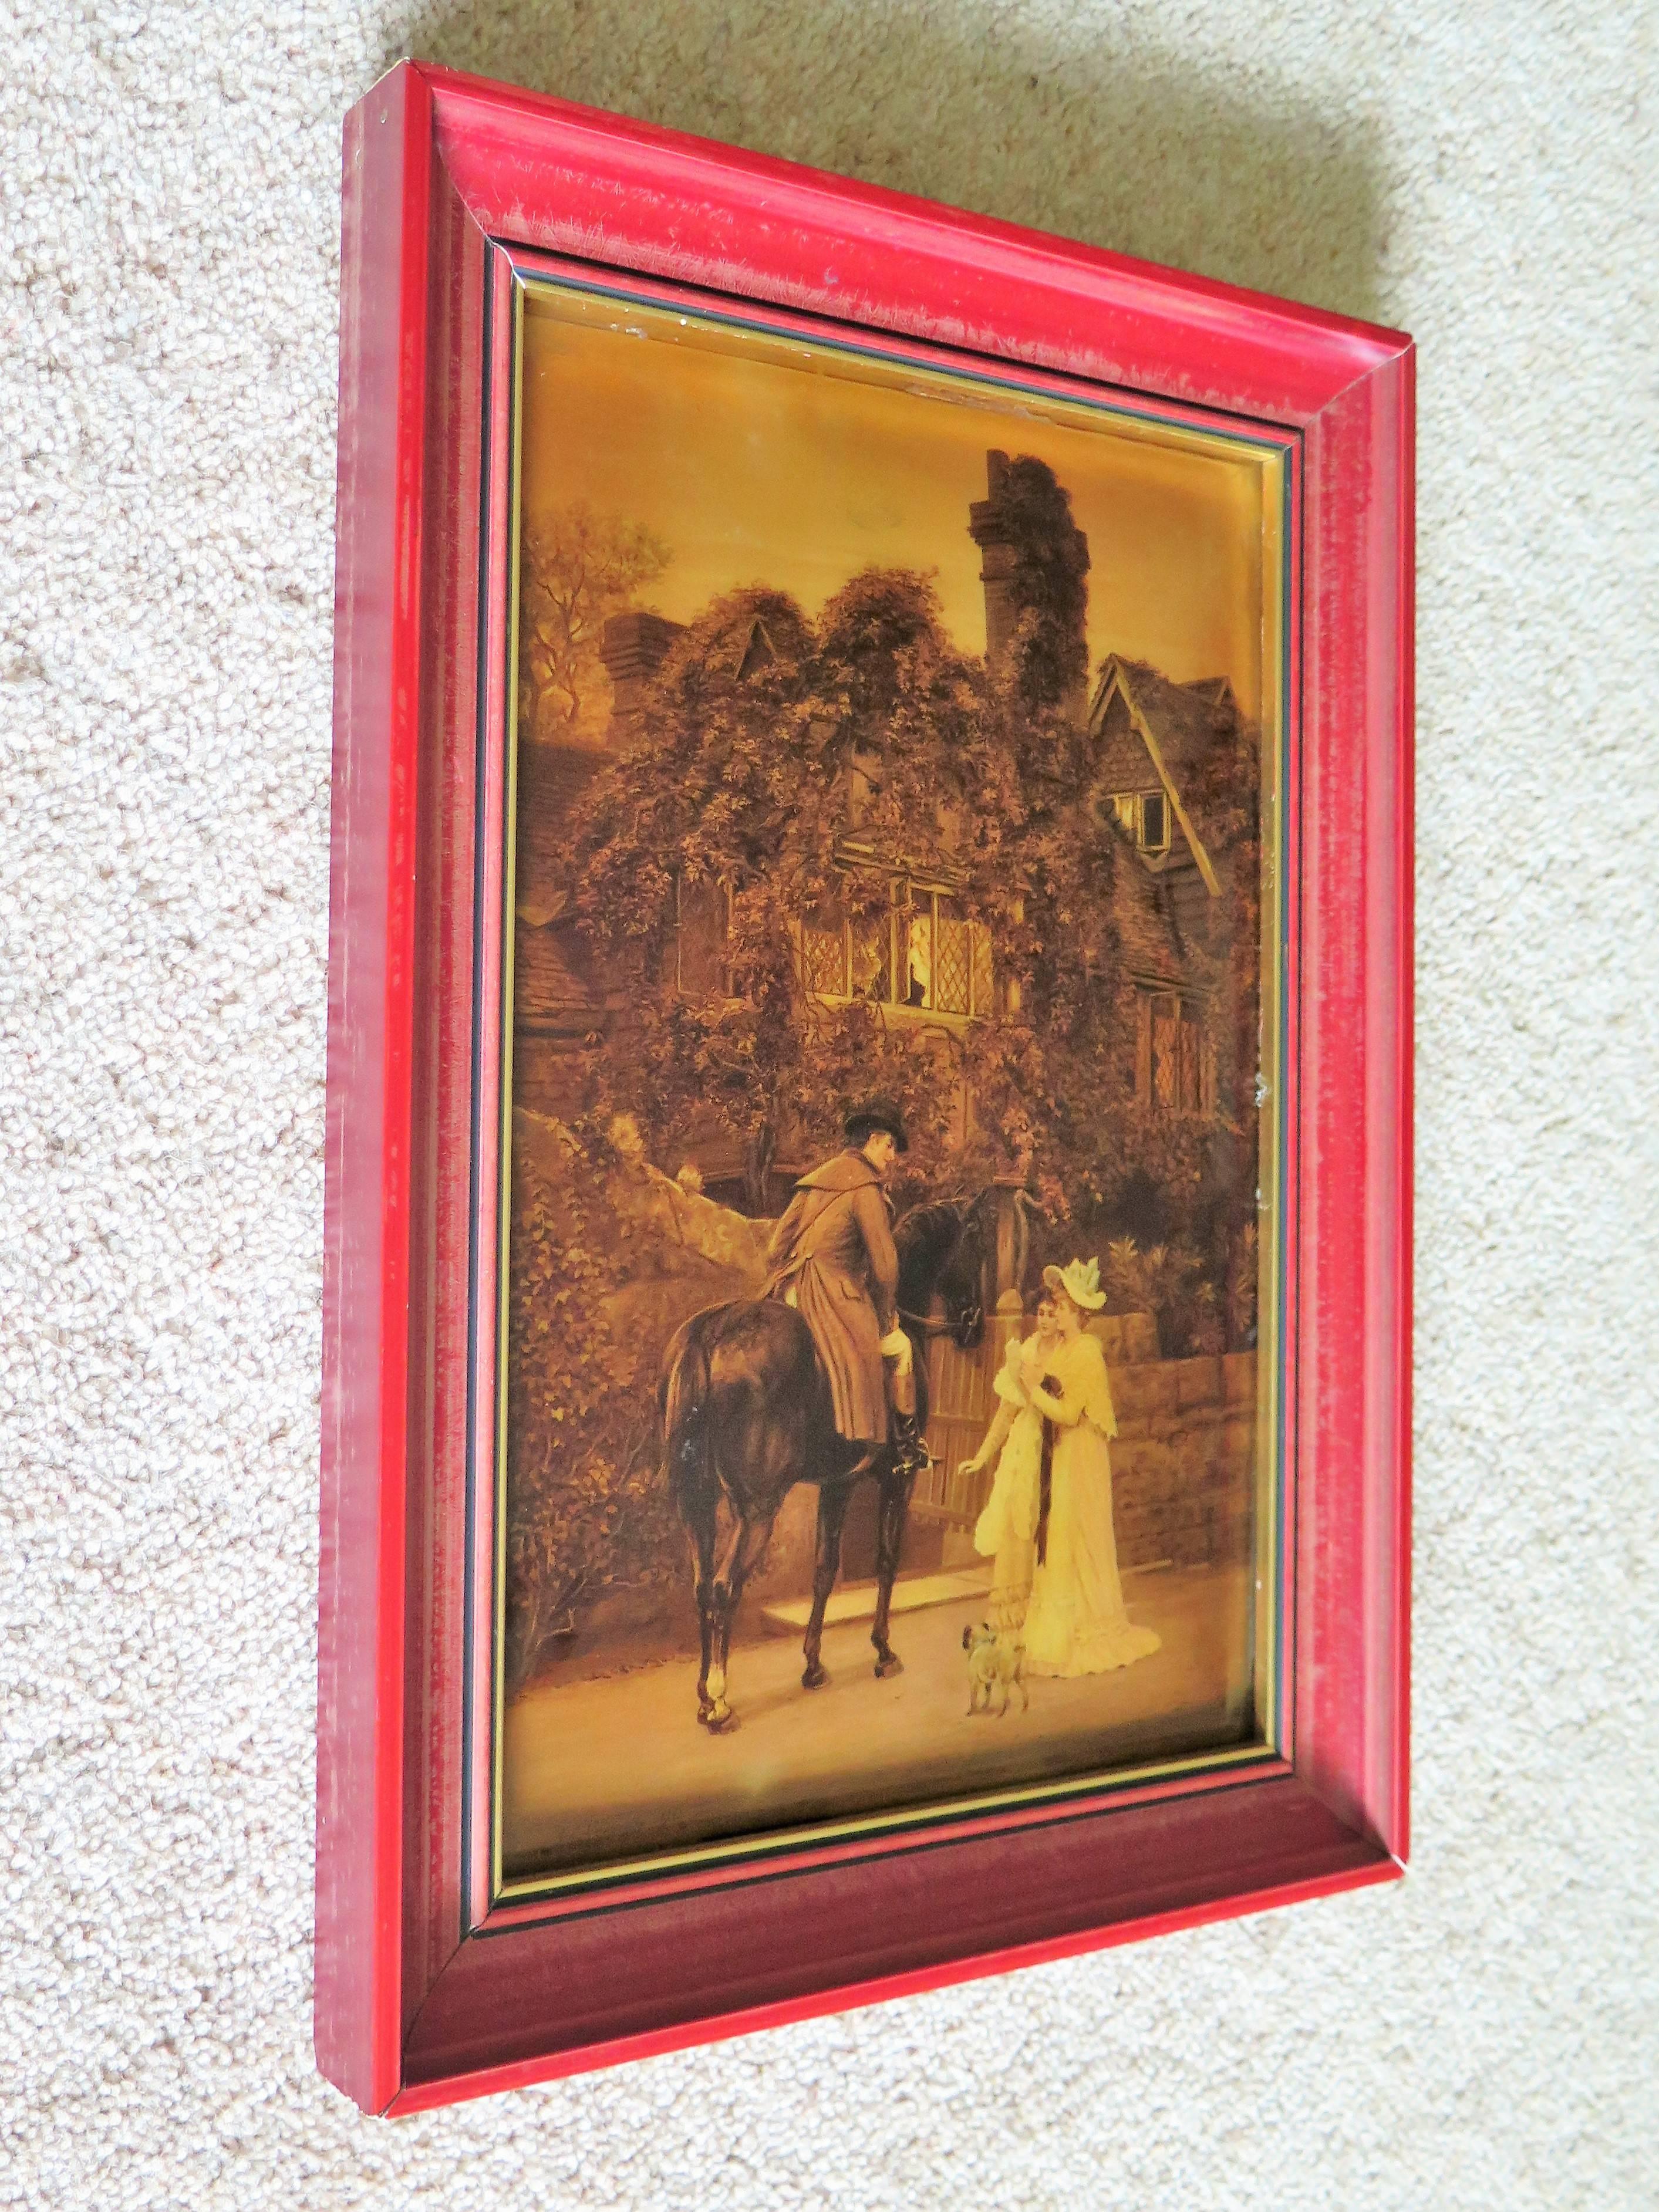 Il s'agit d'un tableau Crystoleum très décoratif de l'époque victorienne d'après A L Vernon appelé The Messenger to The Heiress et datant de la fin de la période victorienne, 1896 

Le crystoleum est dans un cadre en bois peint en rouge.

Arthur